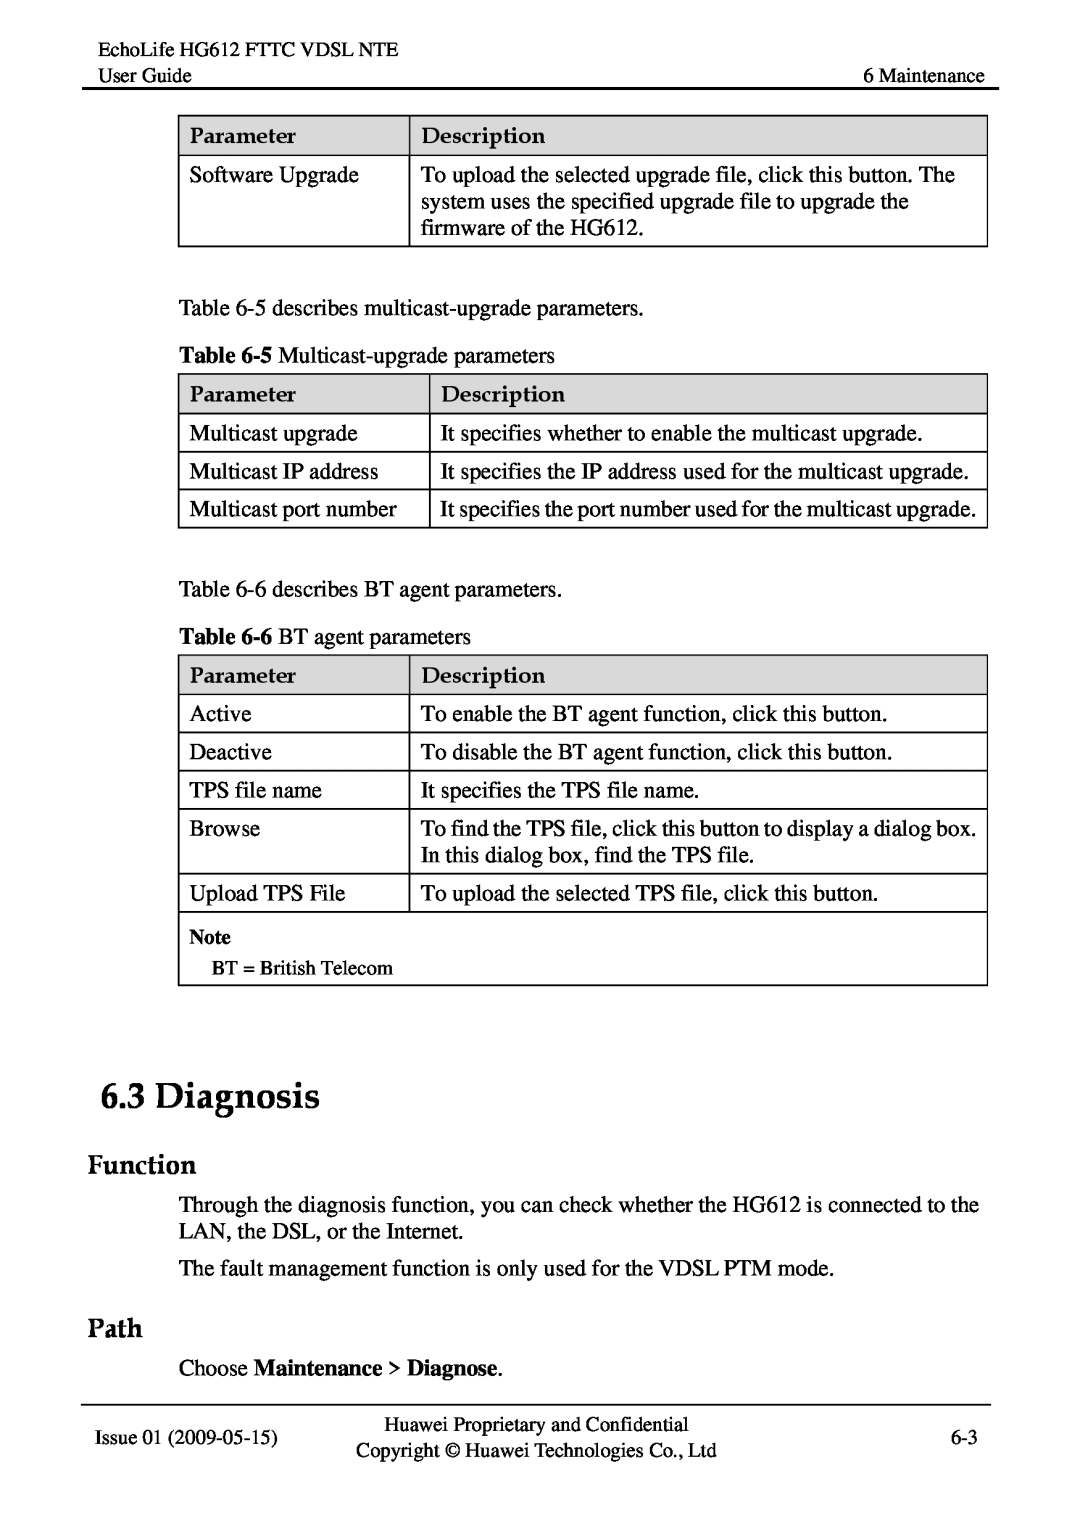 Huawei HG612FTTC VDSL NTE manual Diagnosis, Function, Path, Parameter, Description, Choose Maintenance Diagnose 